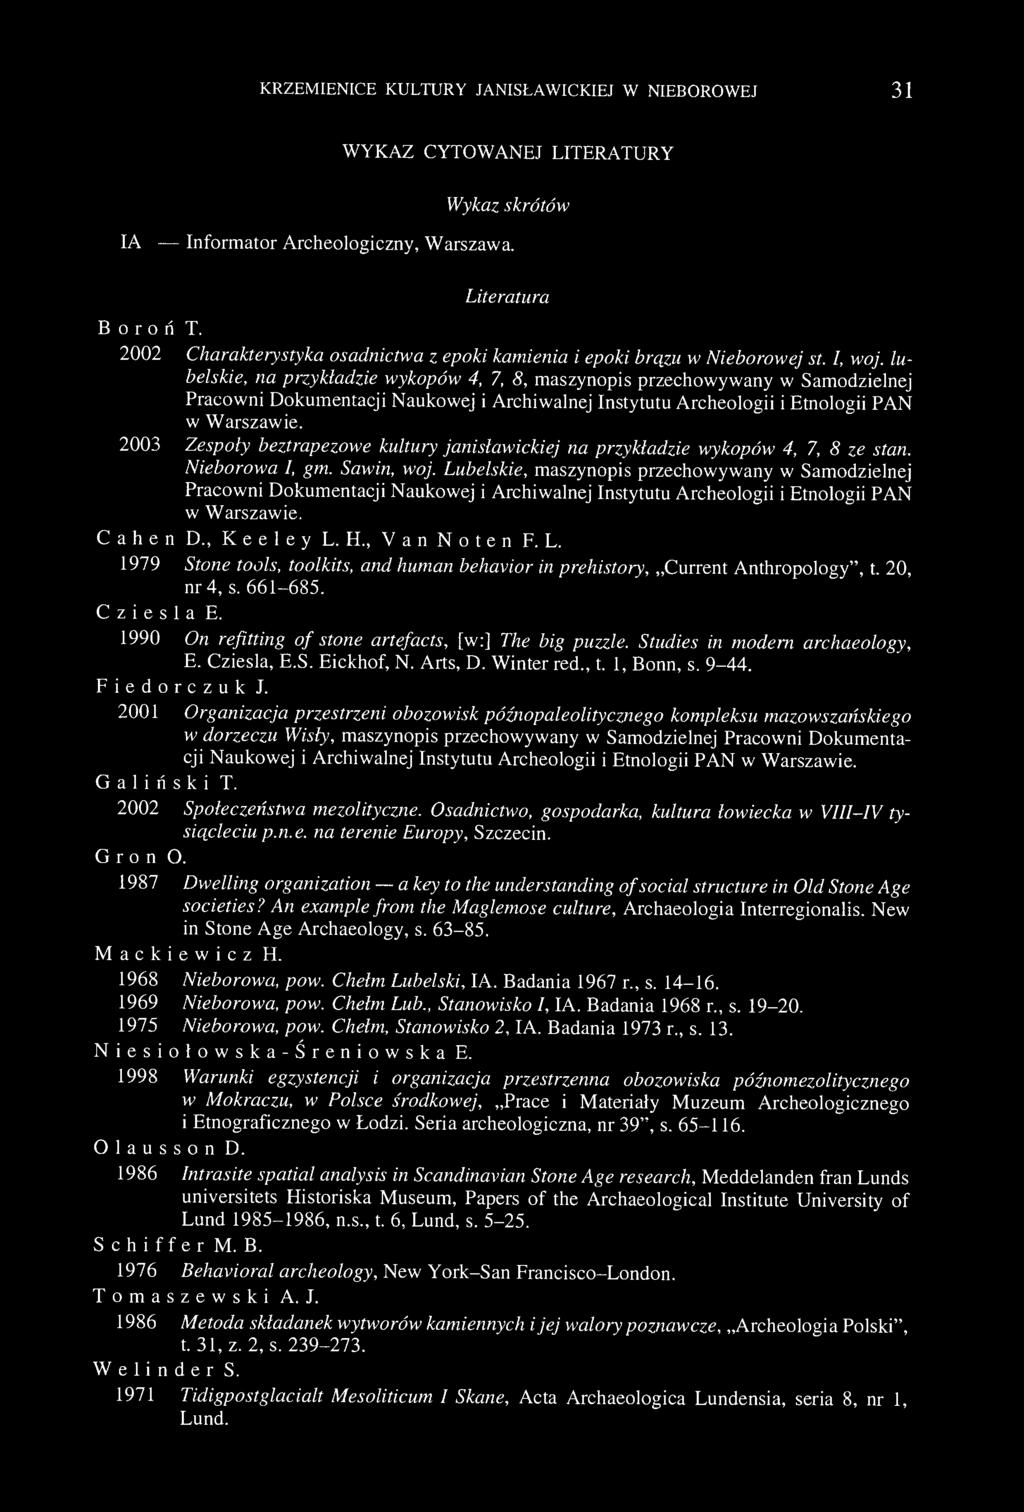 lubelskie, na przykładzie wykopów 4, 7, 8, maszynopis przechowywany w Samodzielnej Pracowni Dokumentacji Naukowej i Archiwalnej Instytutu Archeologii i Etnologii PAN w Warszawie.